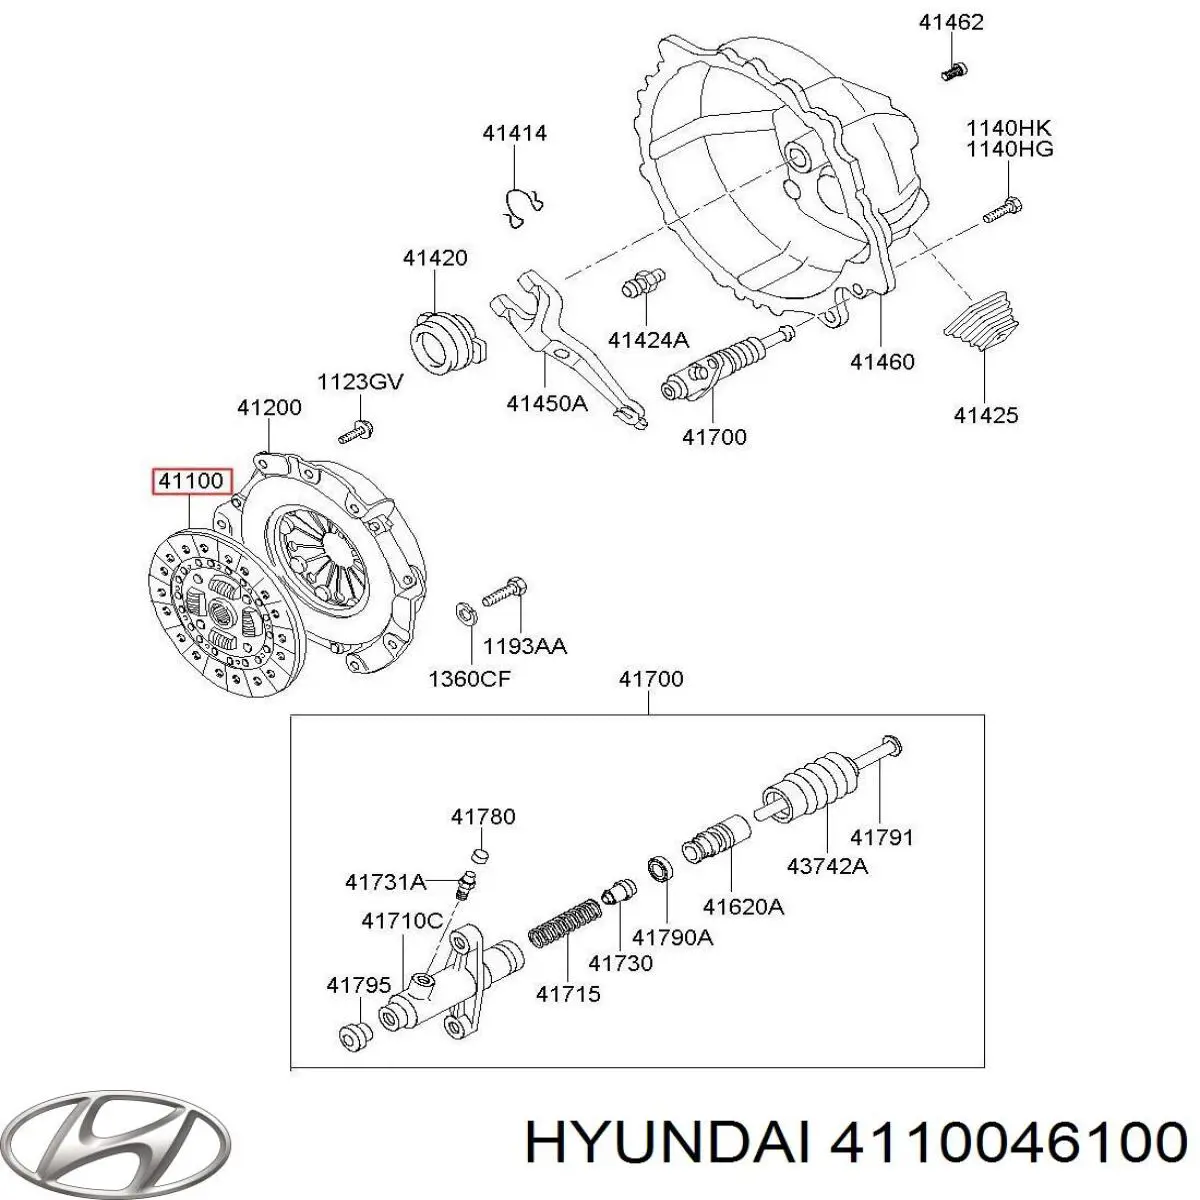 4110045201 Hyundai/Kia disco de embrague